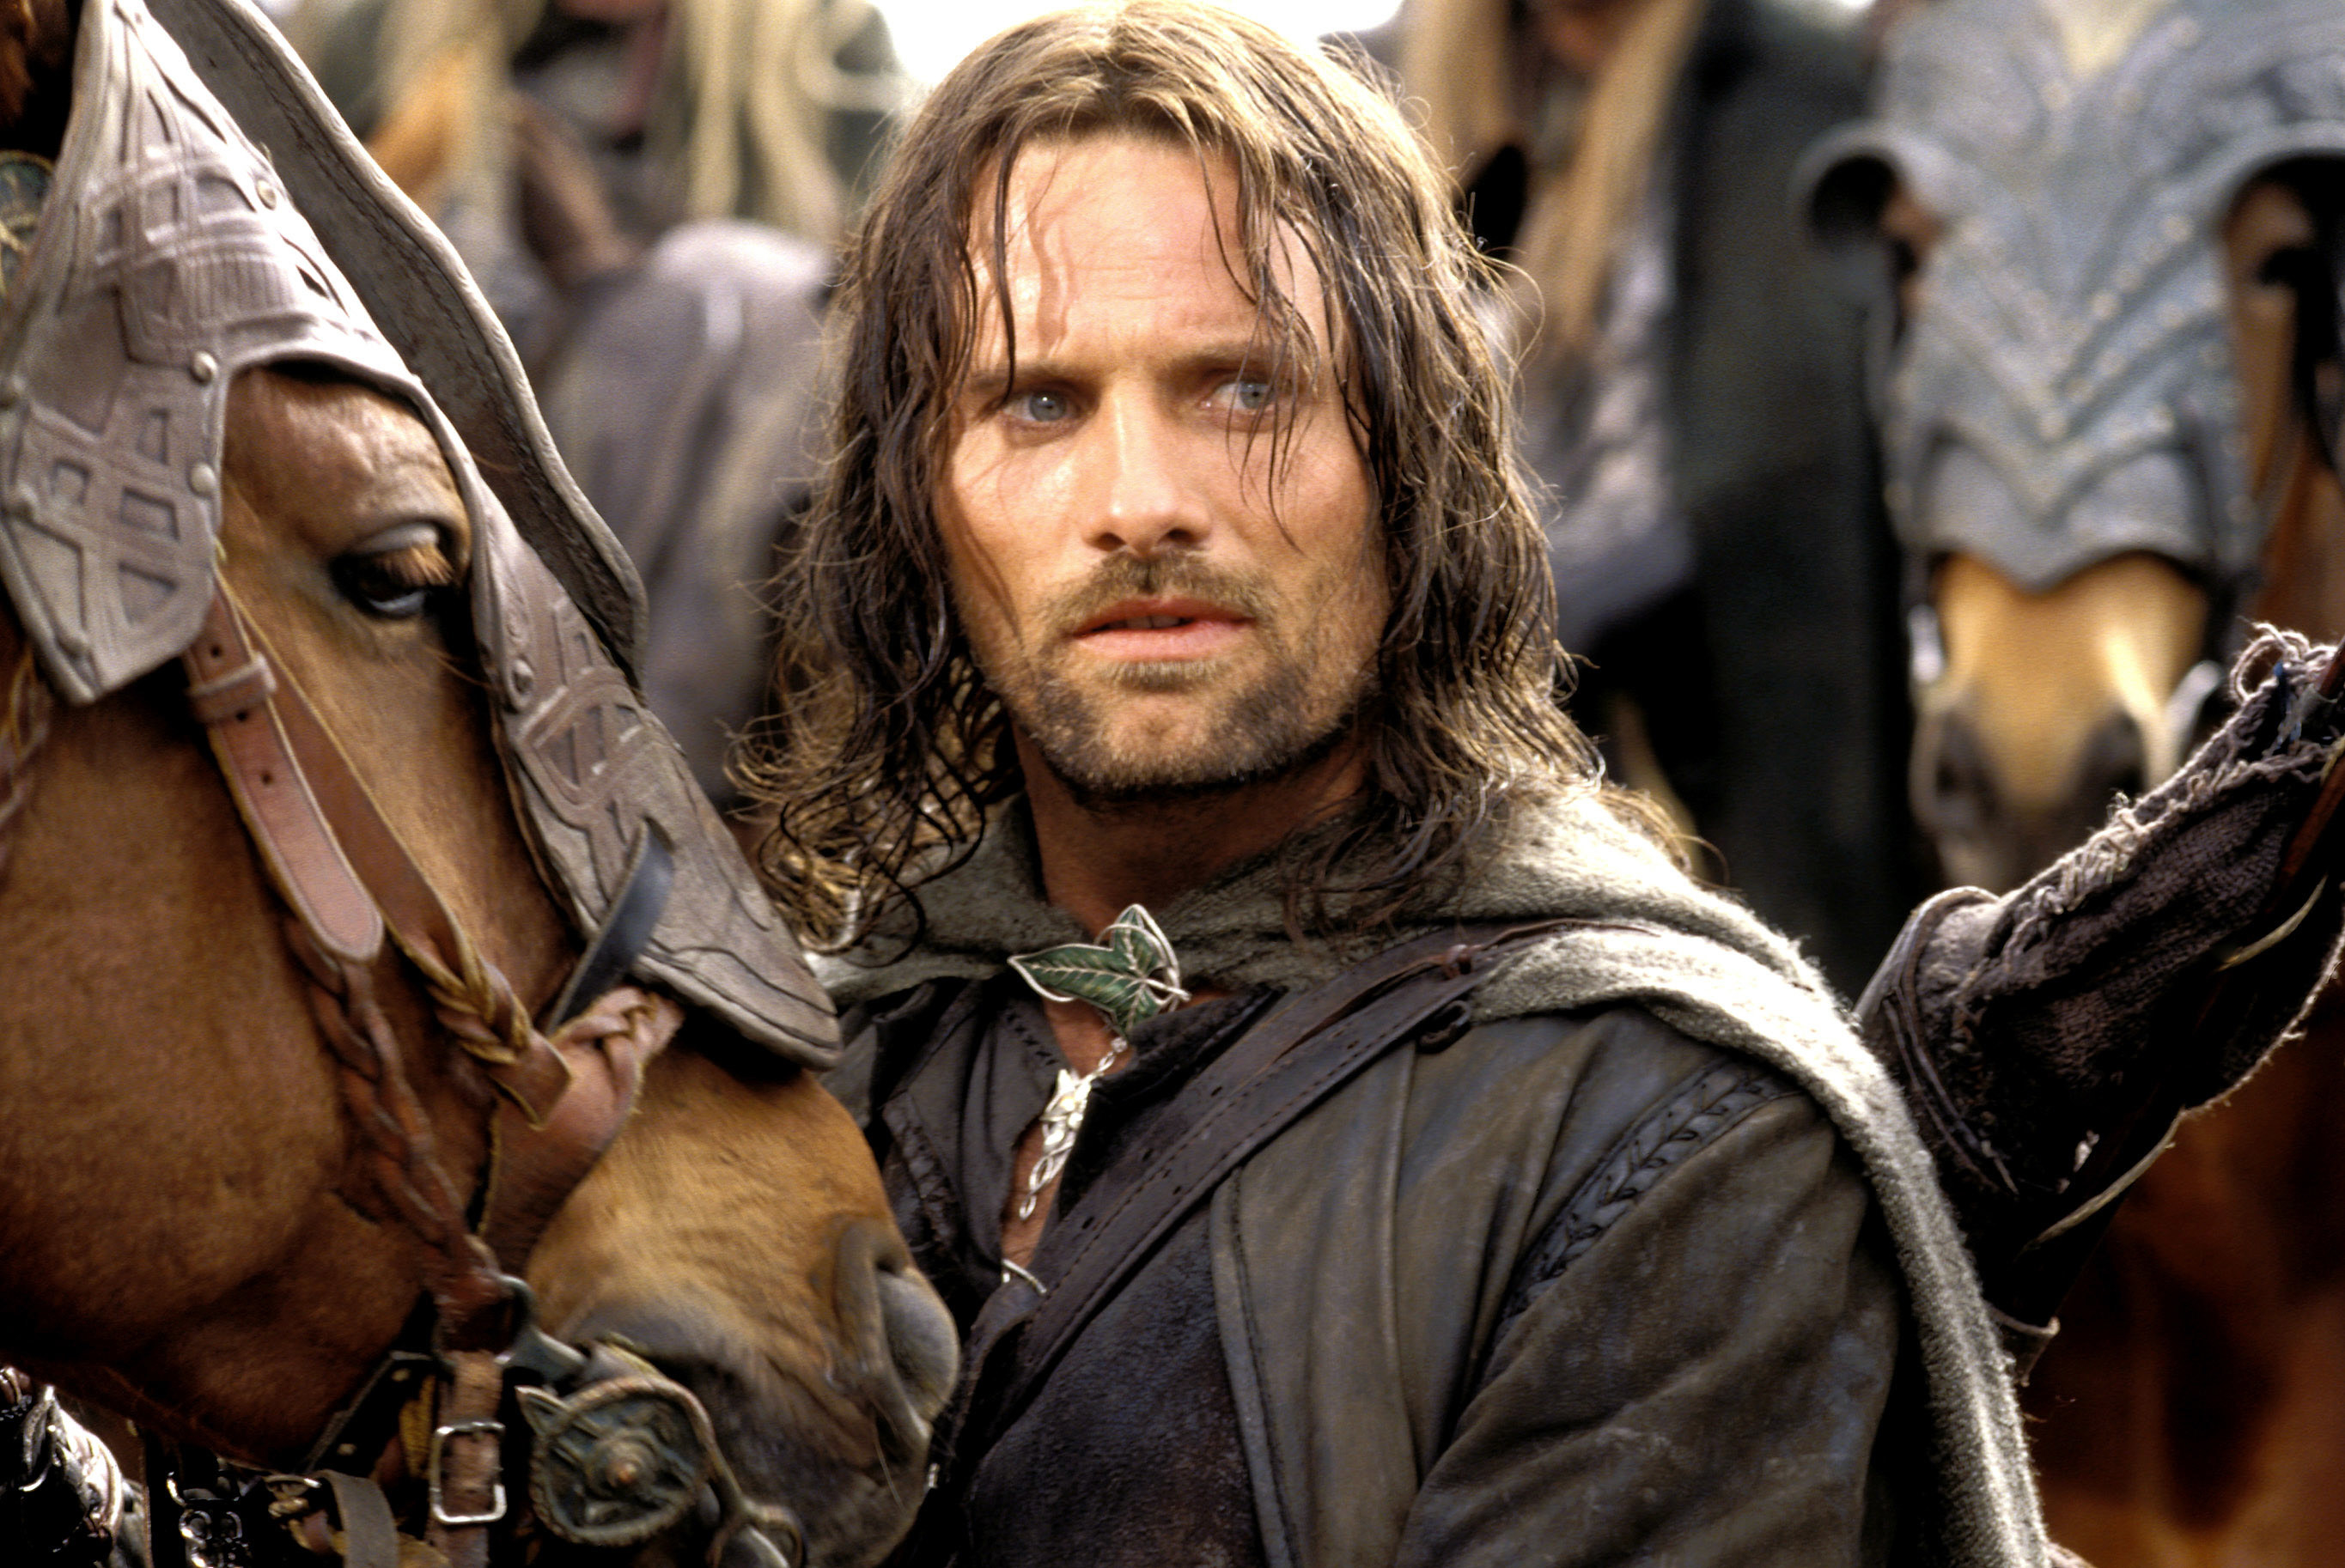 Mortensen as Aragorn next to a horse